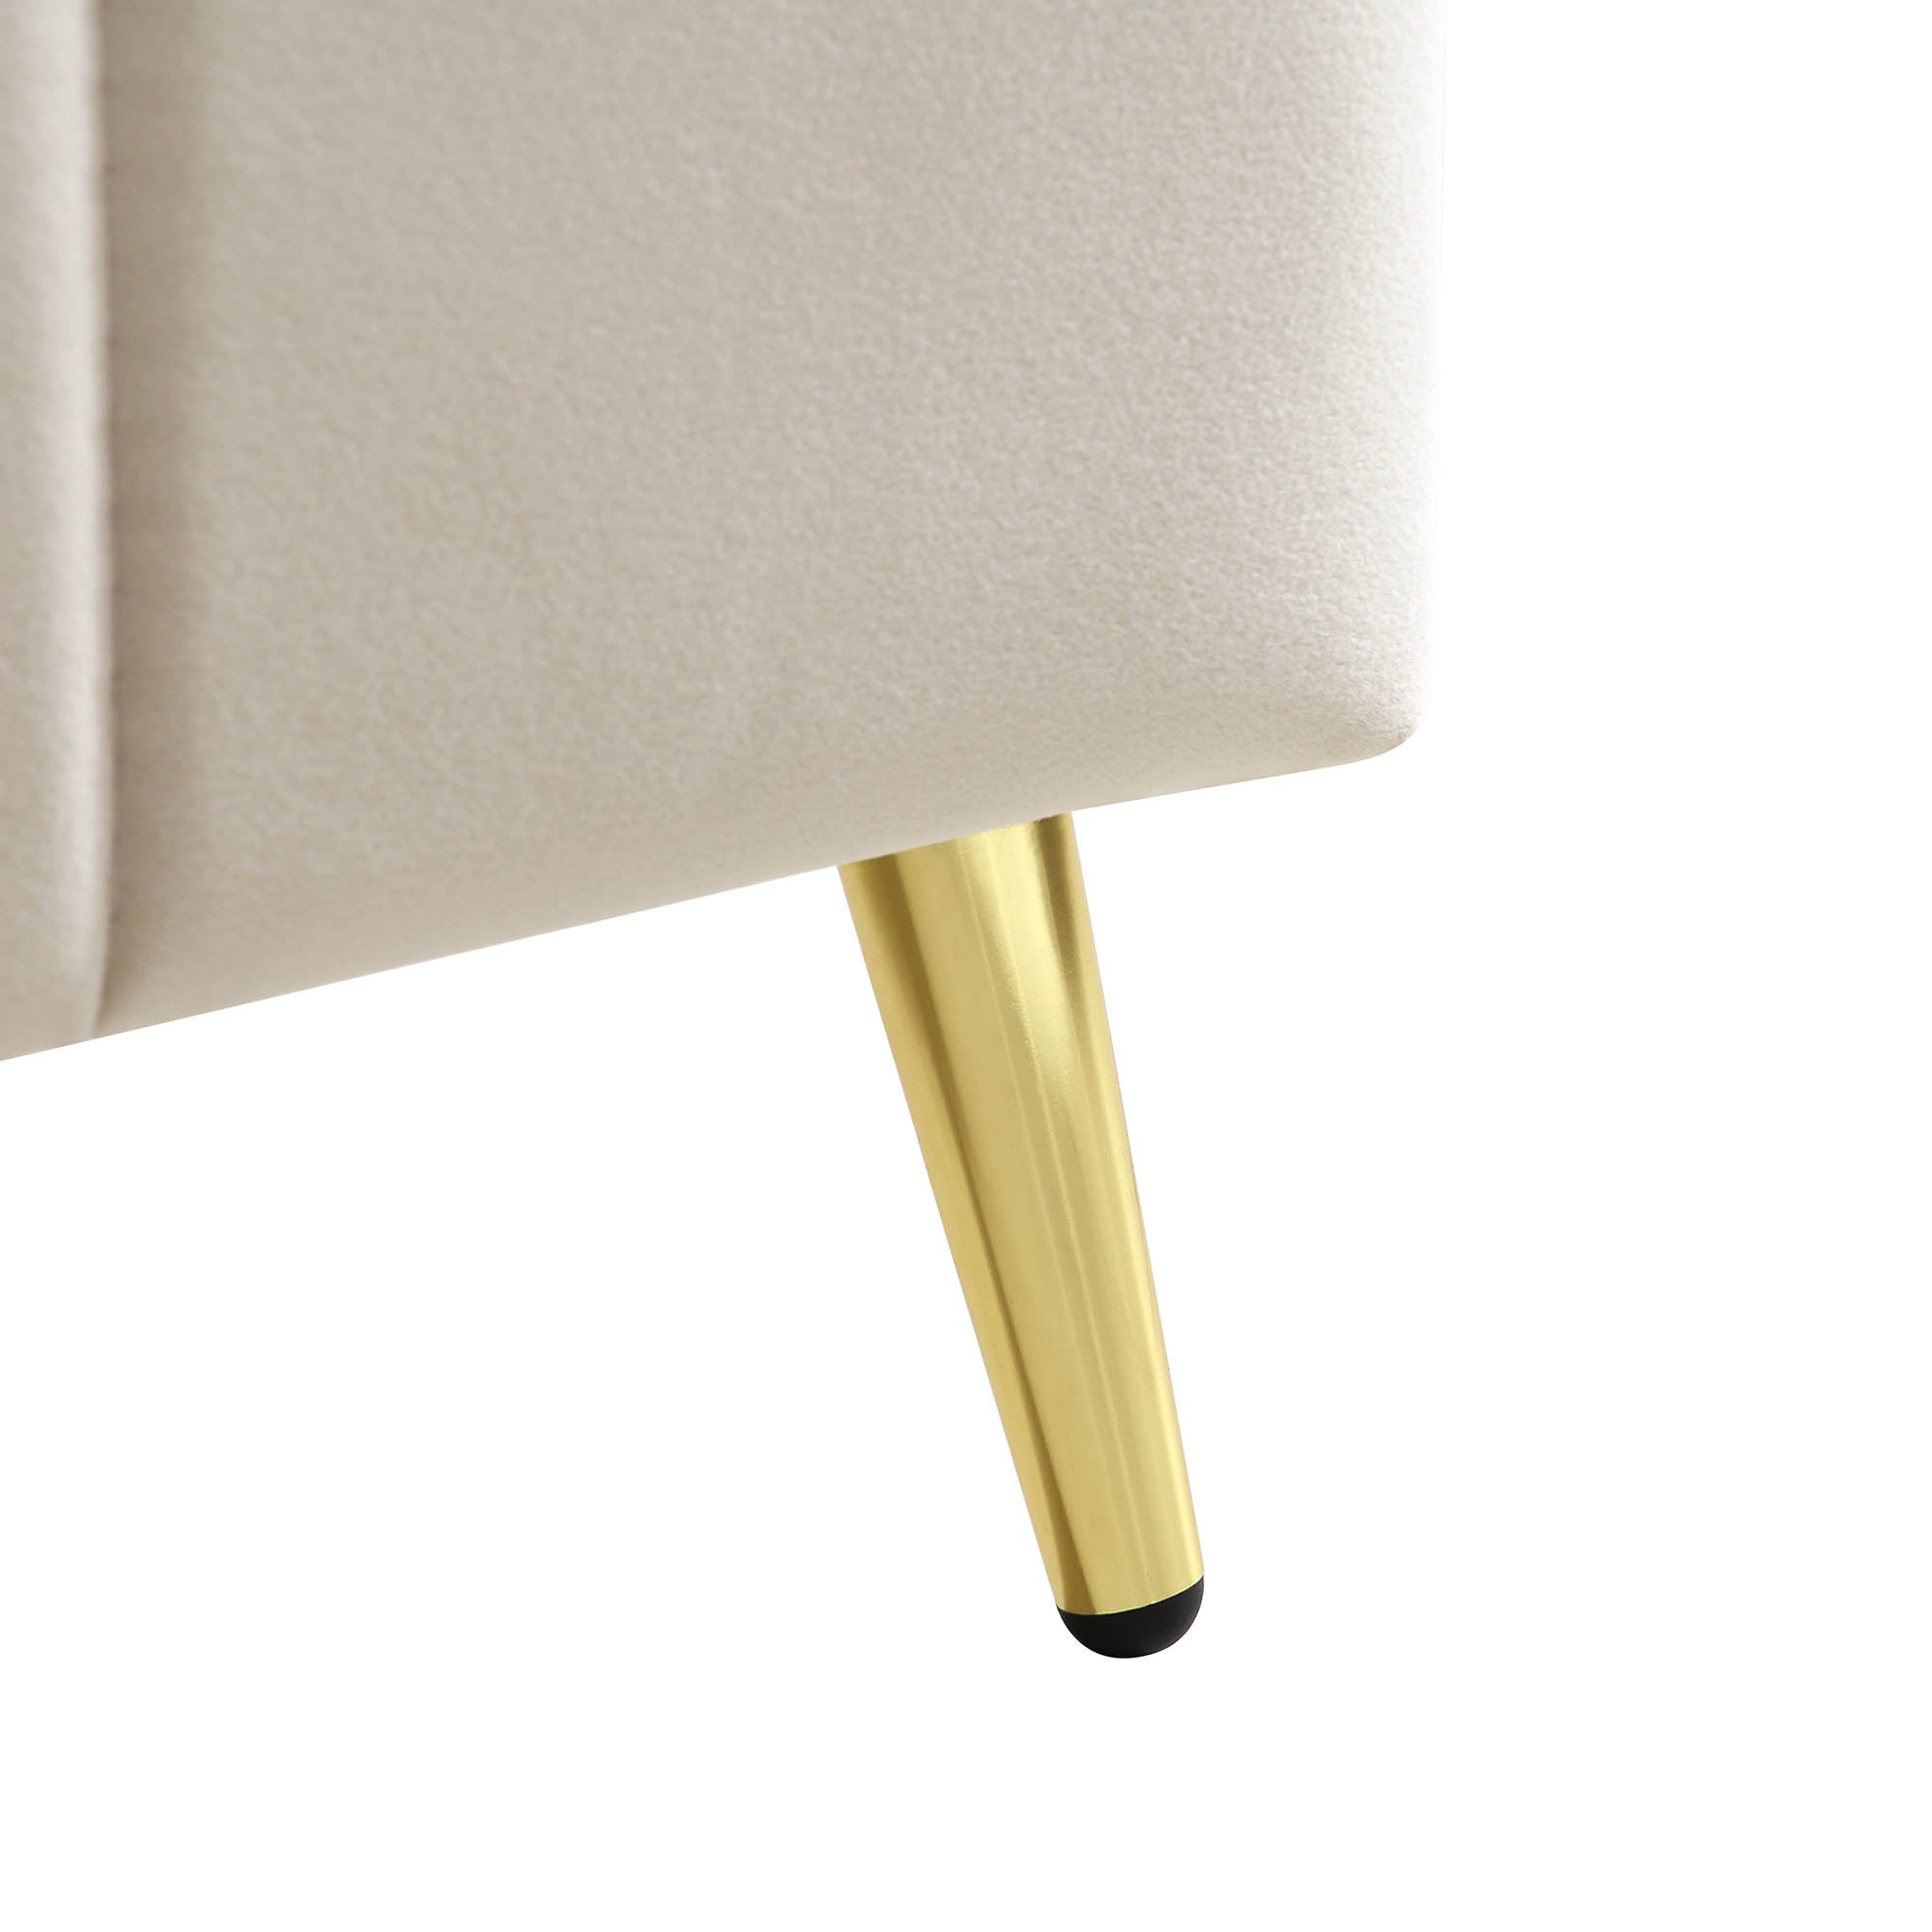 Sylvie Velvet Upholstered Bed Frame with Golden Chrome Legs, Champagne Velvet